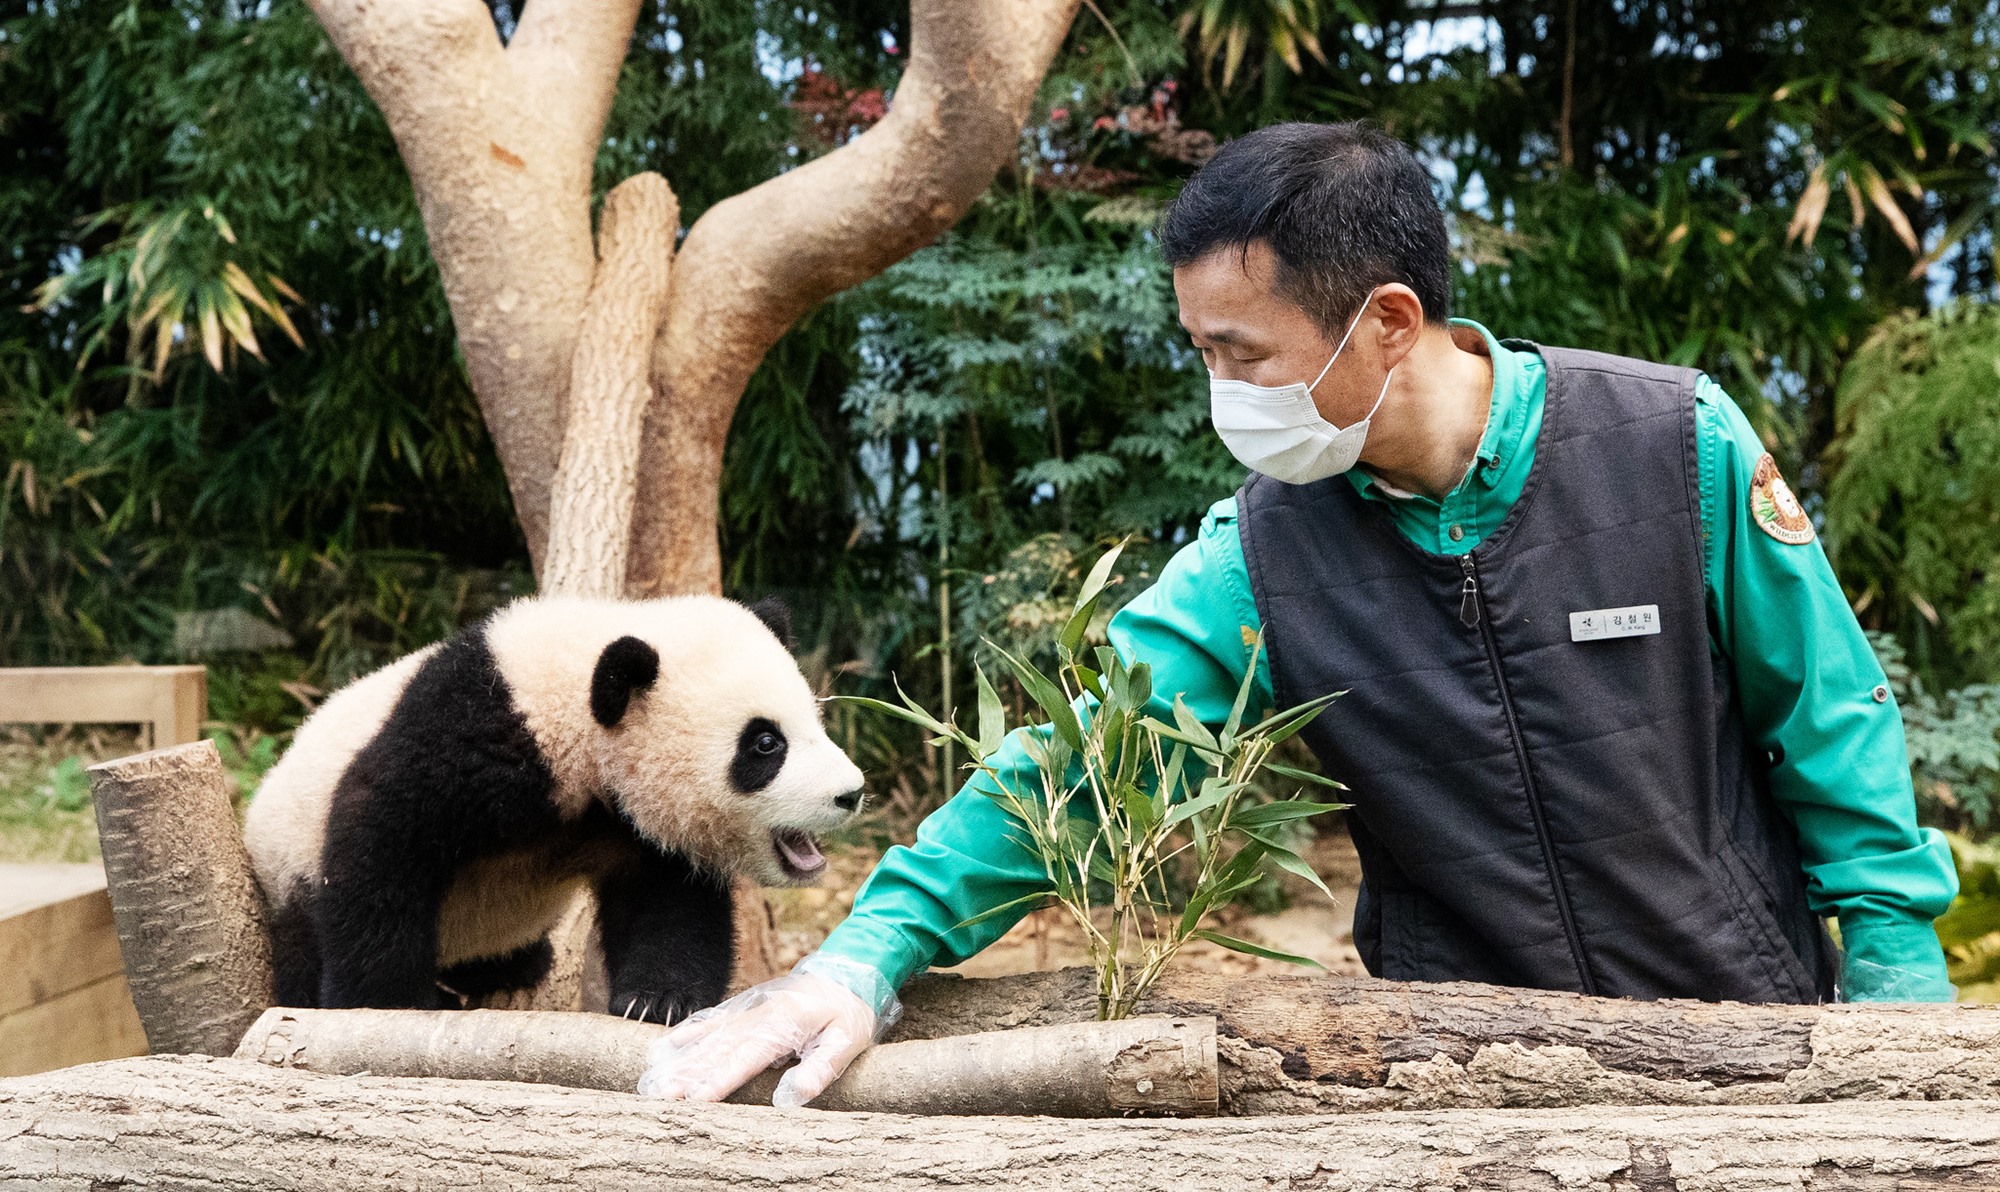 Hình ảnh chụp Fu Bao (Phúc Bảo) lúc 6 tháng tuổi cùng nhân viên chăm sóc gấu trúc Kang Cherwon, tại khu Panda World của công viên giải trí Everland nằm ở thành phố Yongin, tỉnh Gyeonggi-do vào tháng 1/2021. (Ảnh: Kim Sunjoo / Korea.net)